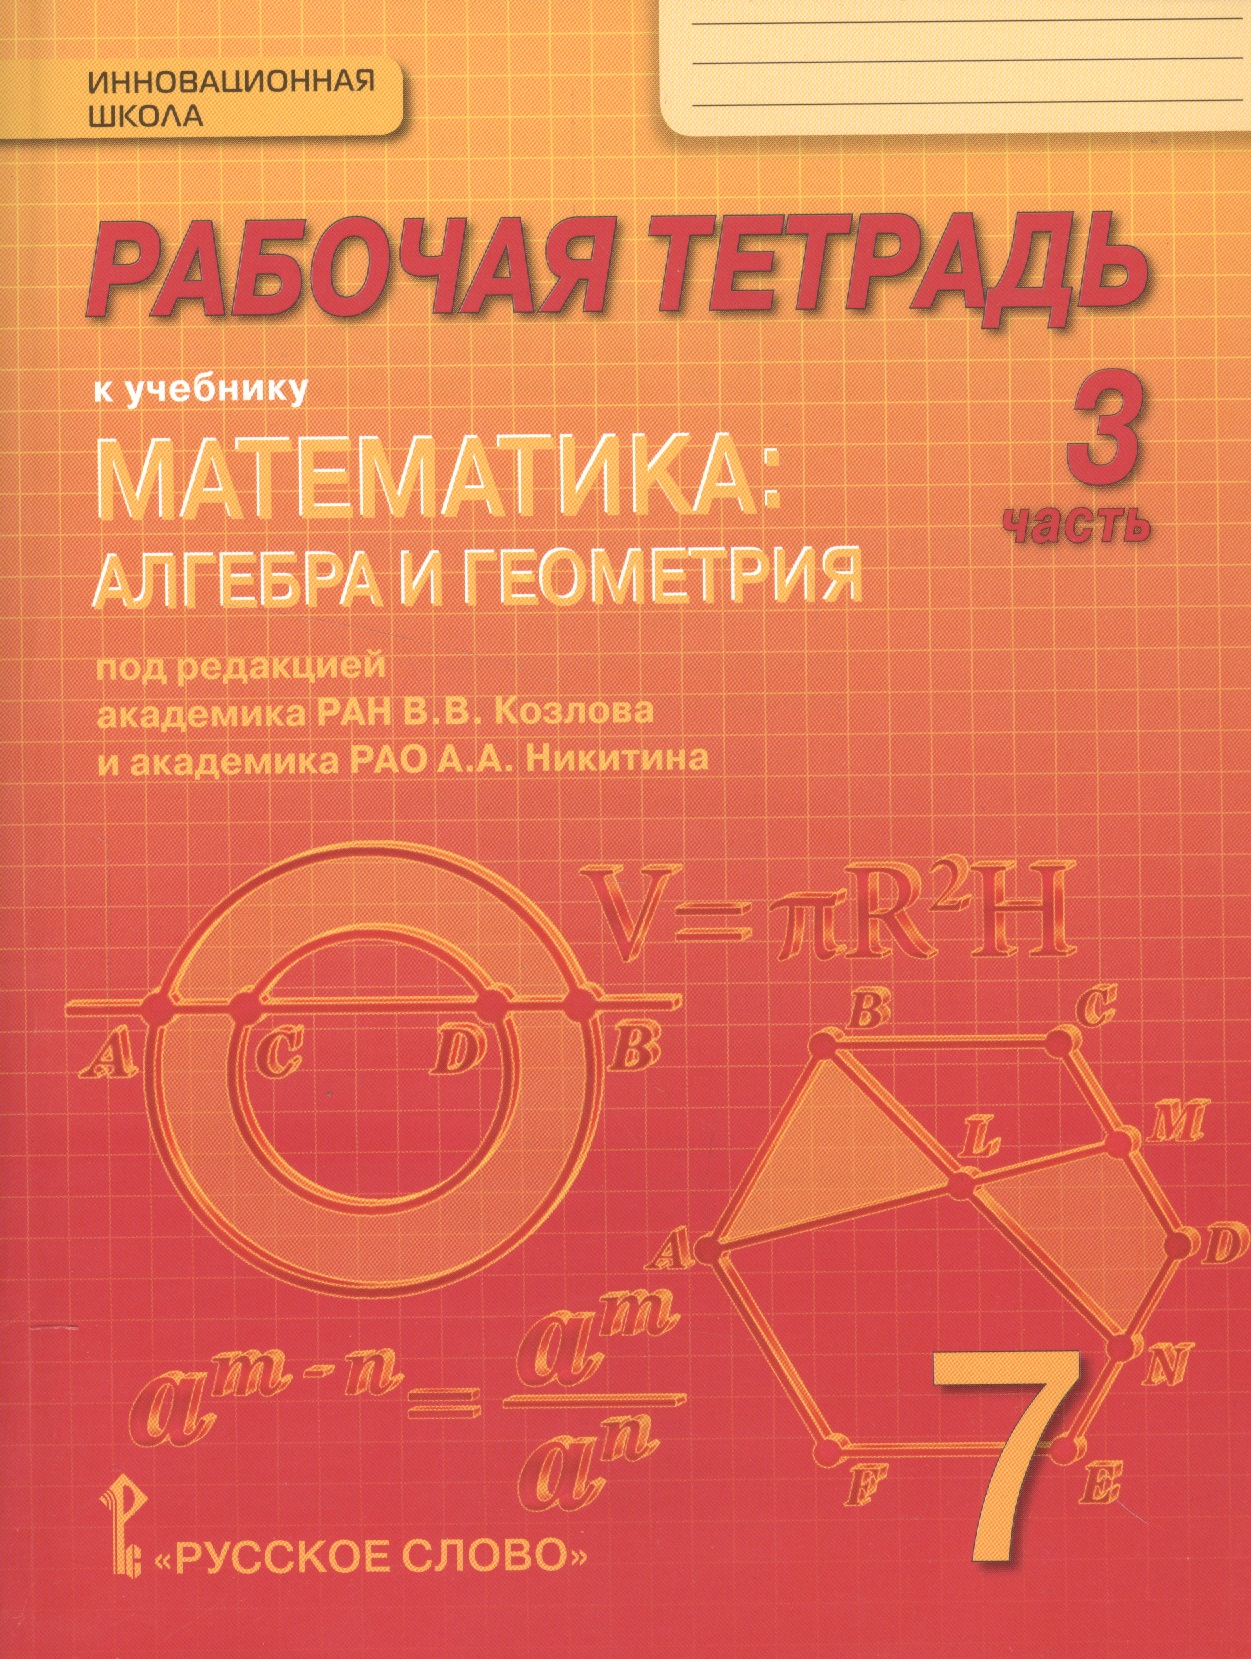 Рабочая тетрадь к учебнику Математика: алгебра и геометрия. 7 класс, 3 часть